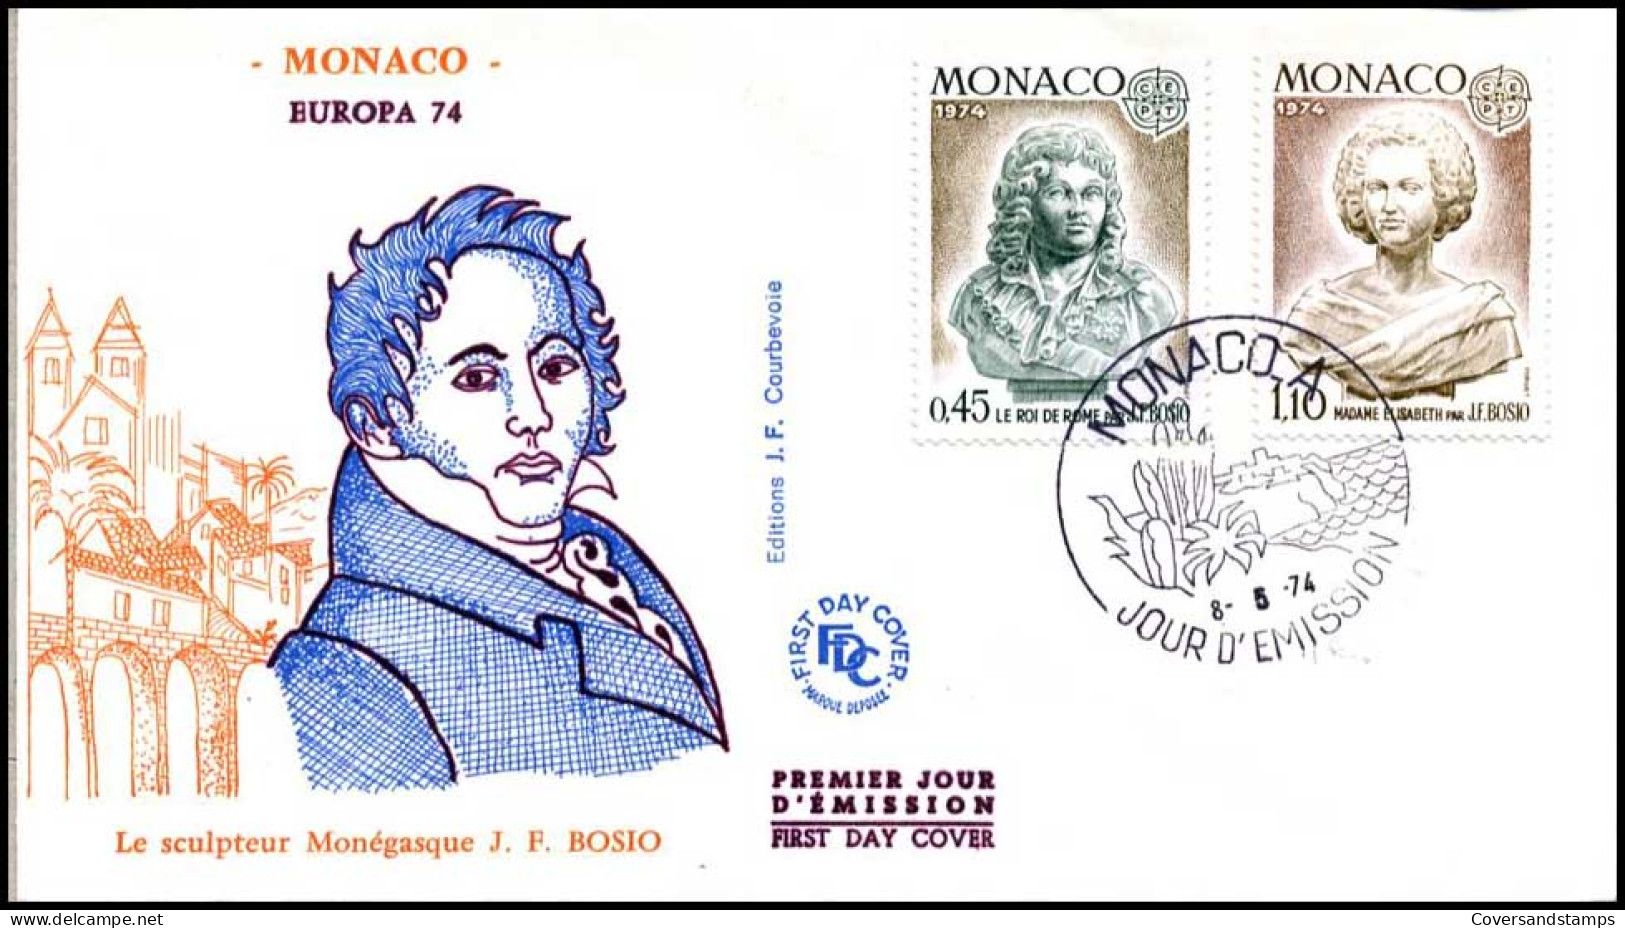  Monaco - FDC - Europa CEPT 1974 - 1974